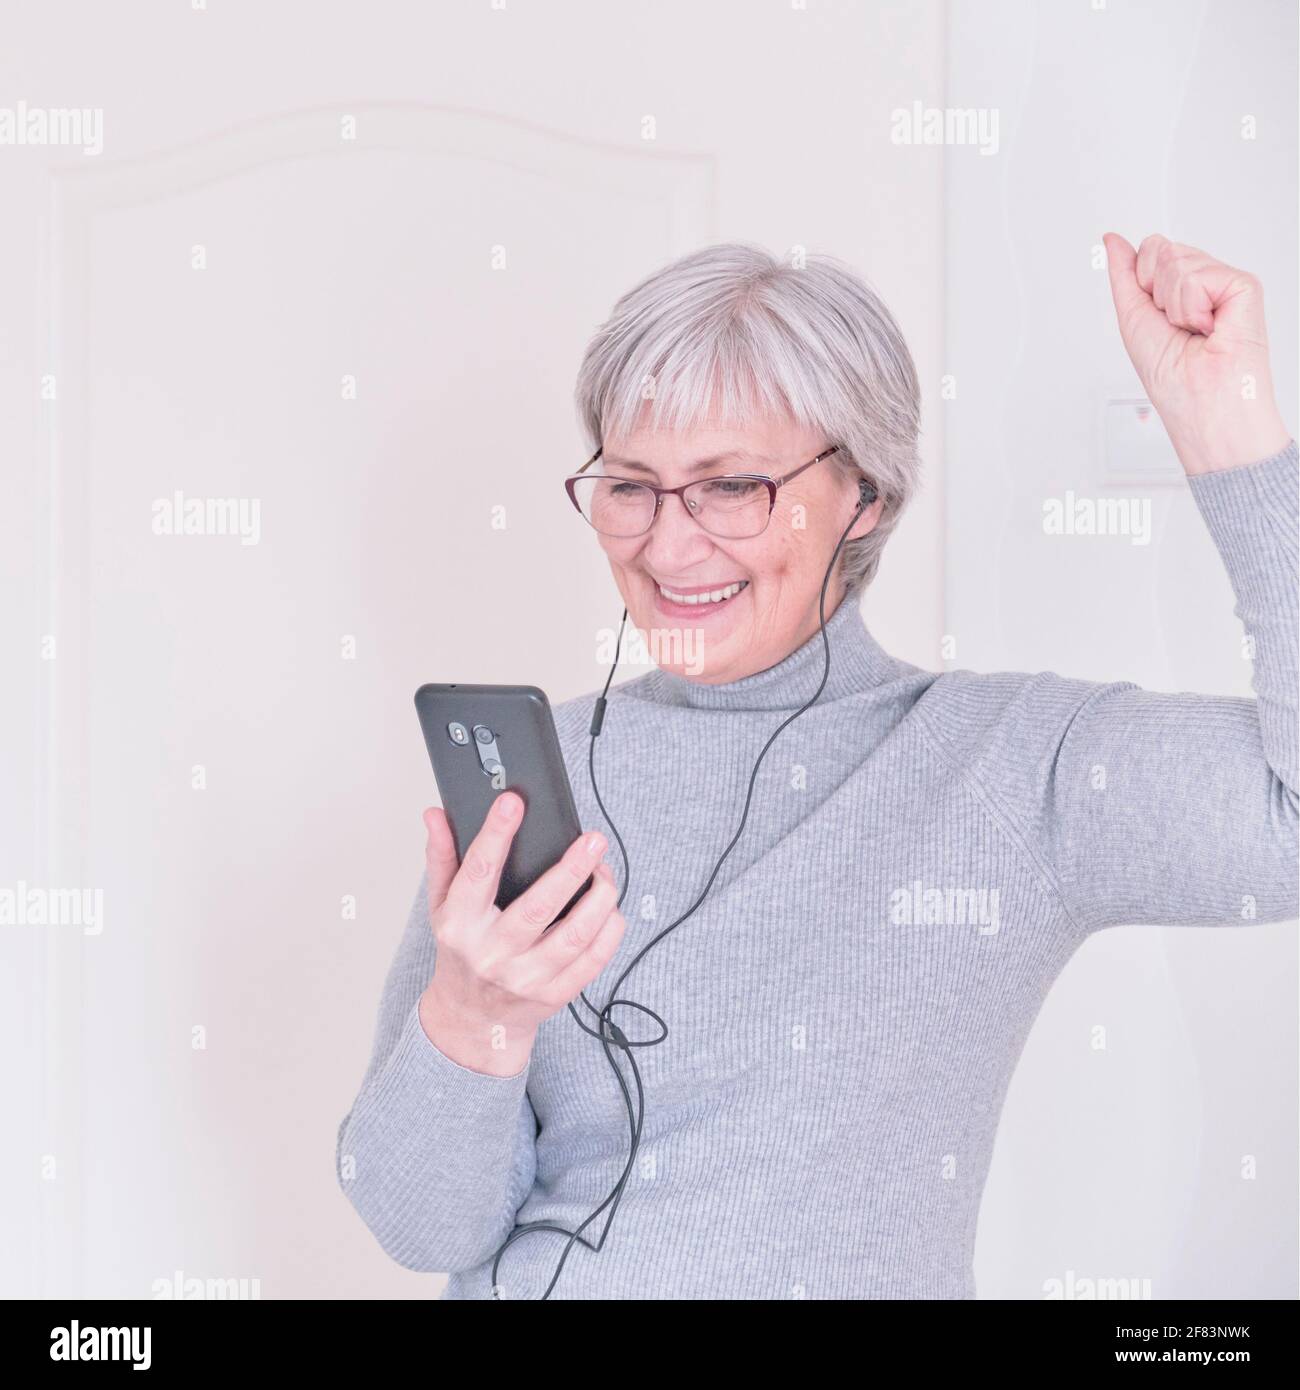 Eine grauhaarige ältere Frau mit Brille, in Kopfhörern, in einem grauen Rollkragen, die zu Hause auf das Smartphone schaut und Freude hat. Lifestyle-Moment. Stockfoto